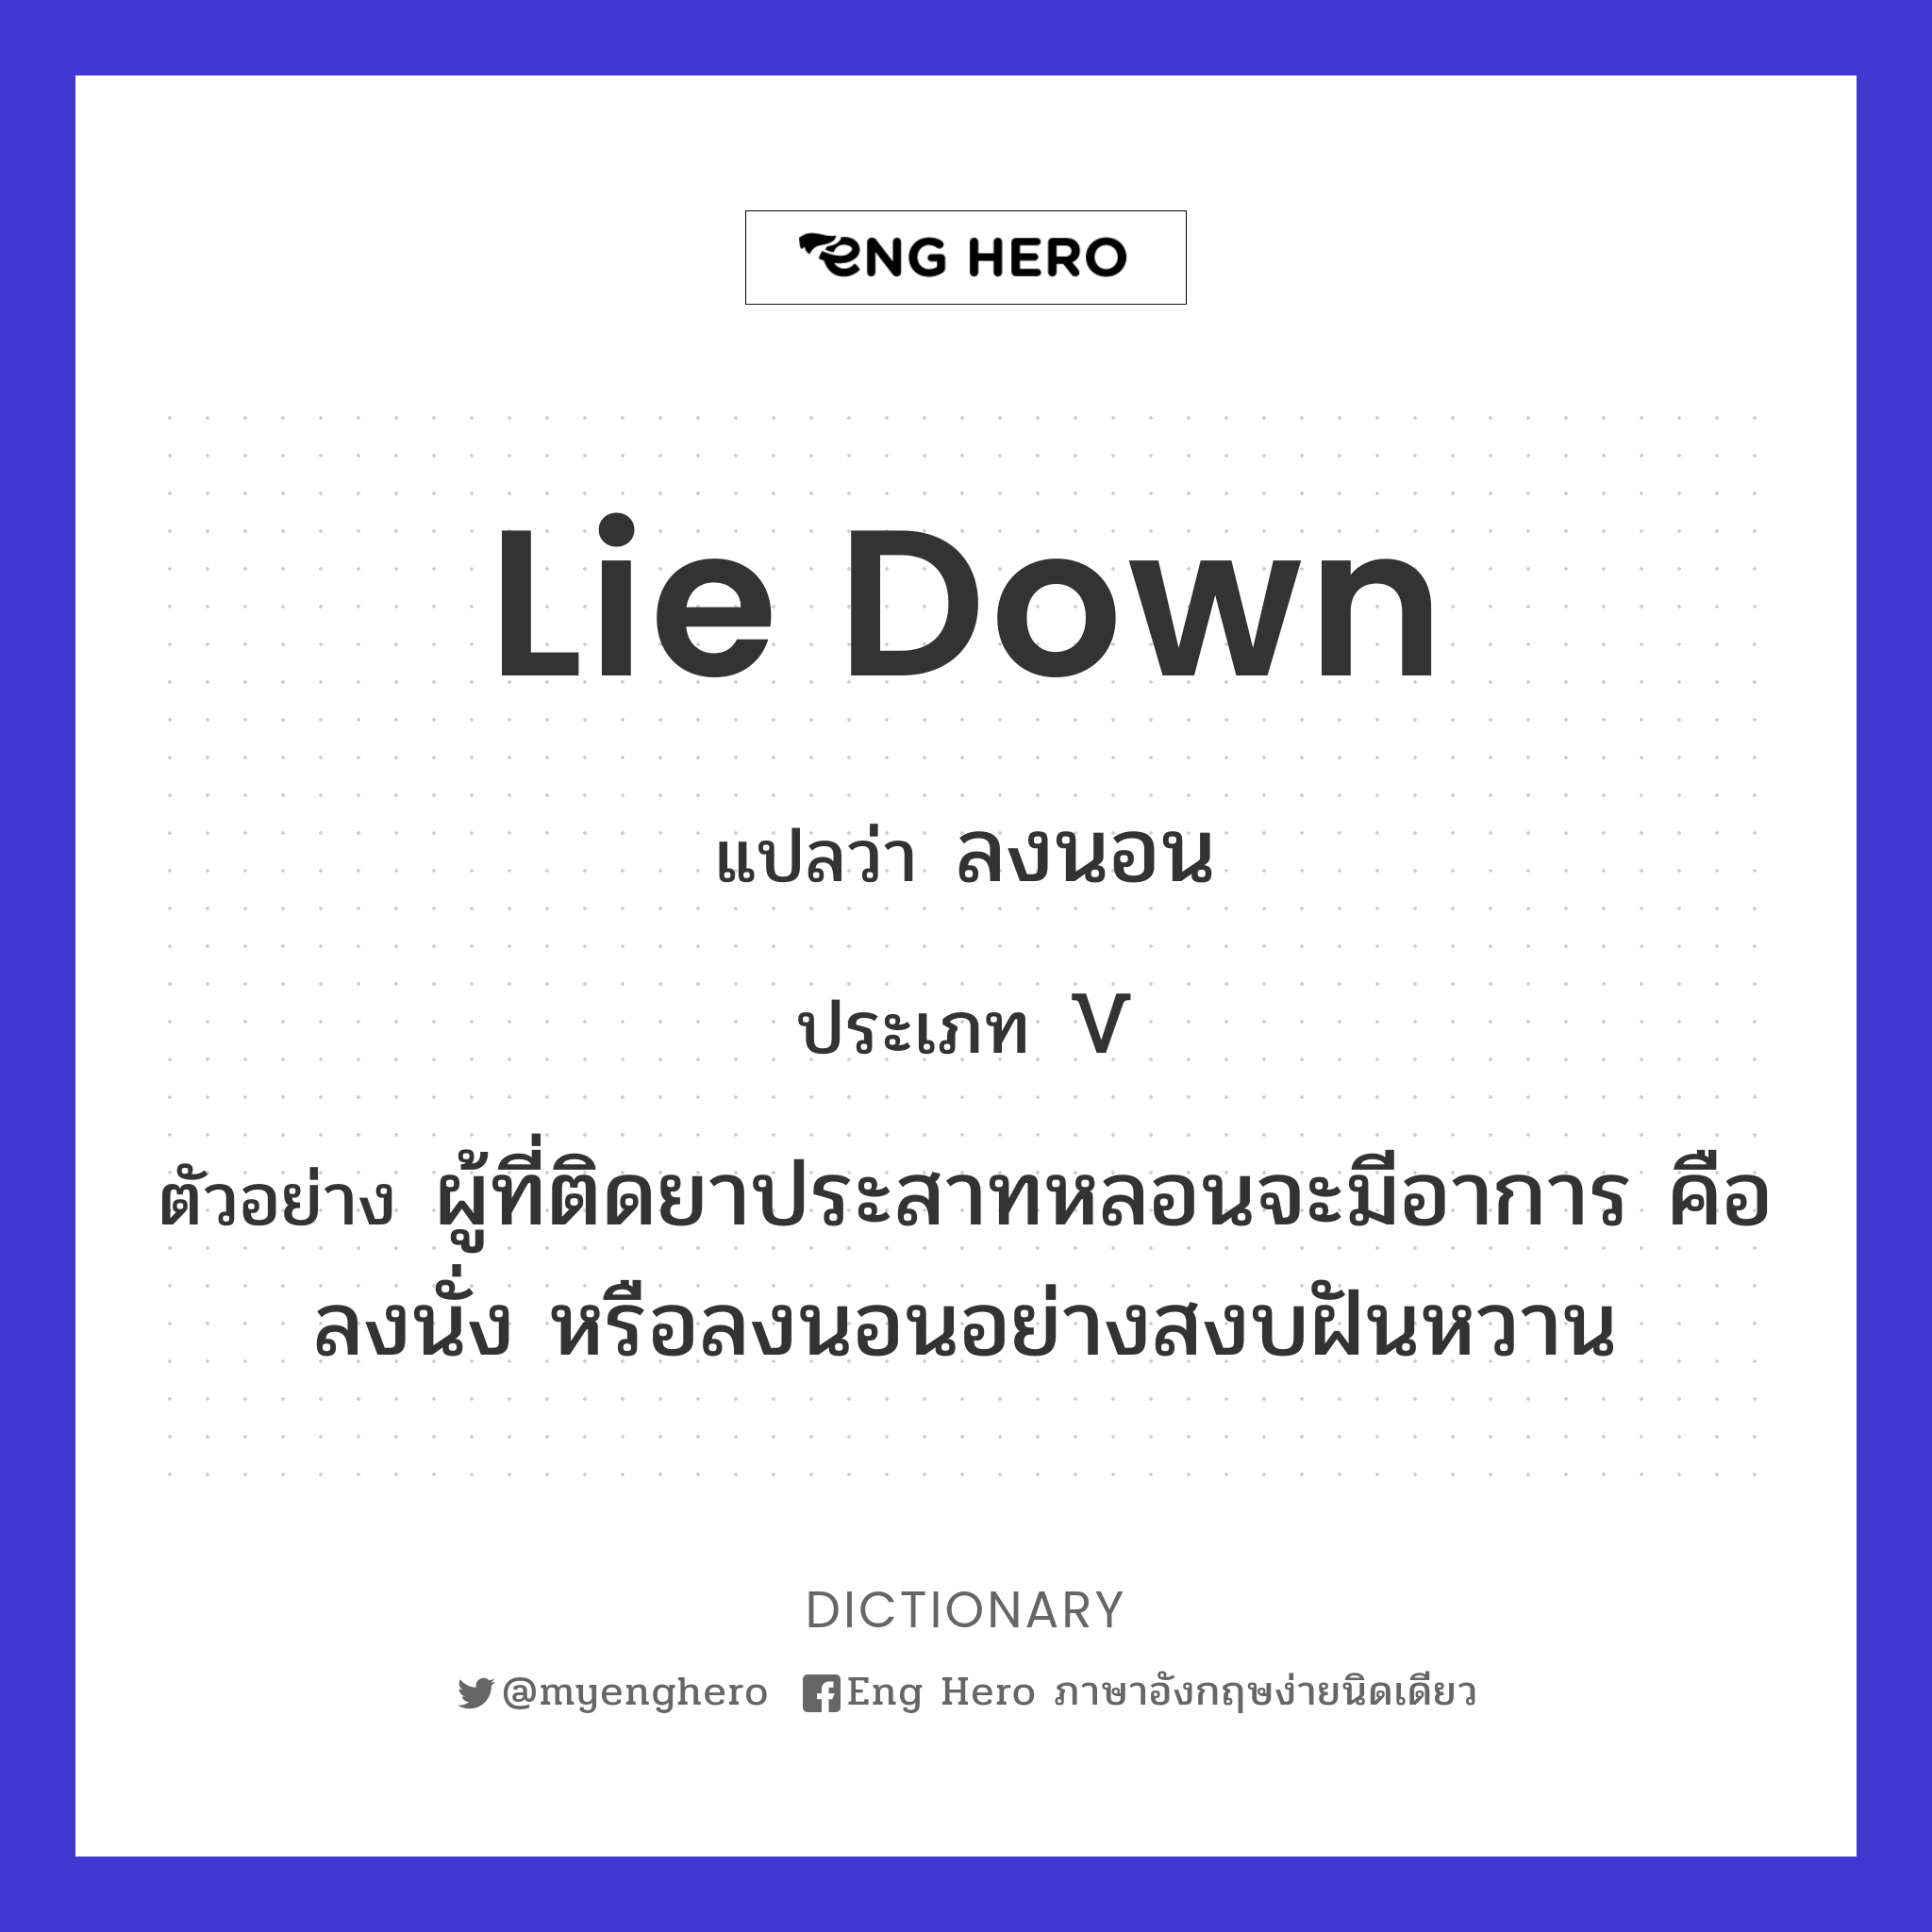 lie down